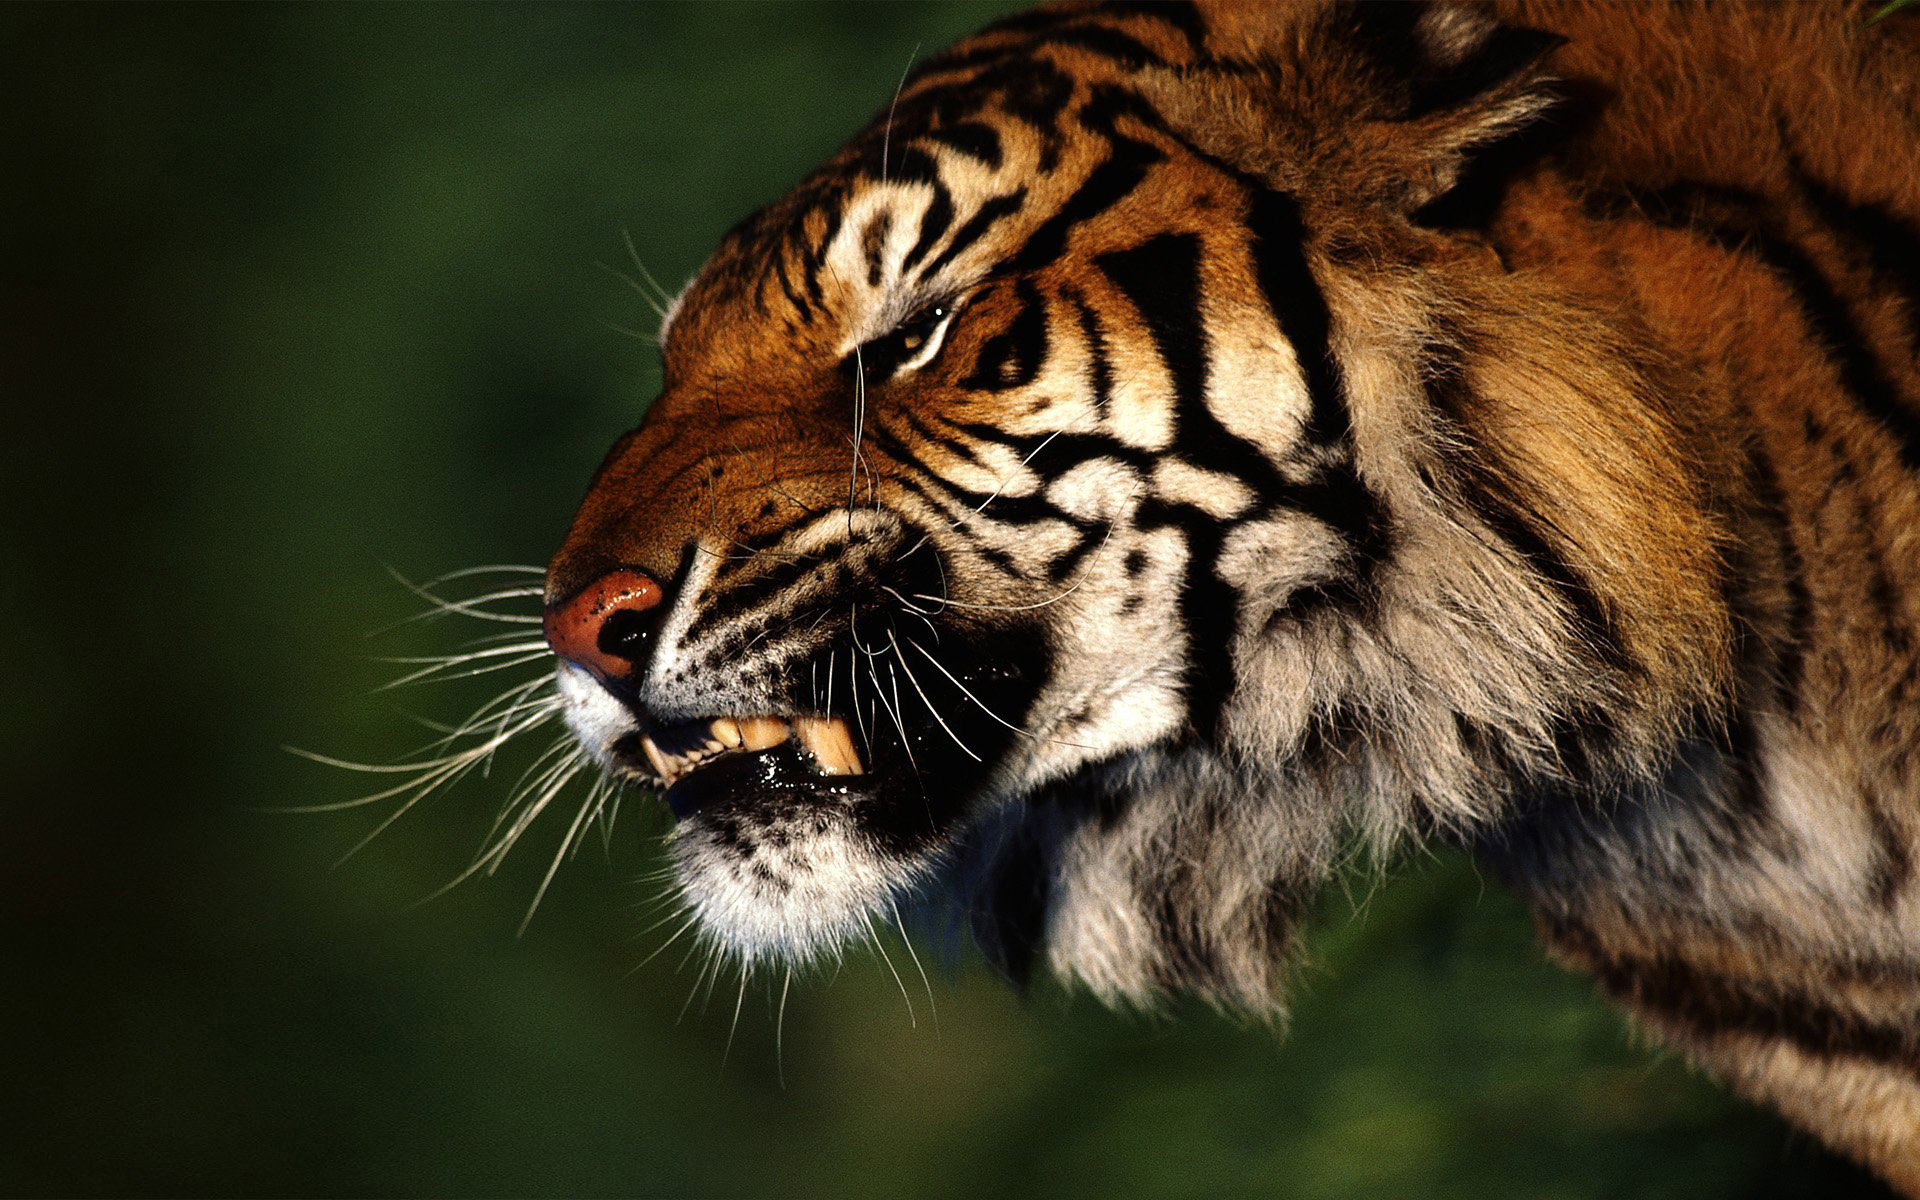 Fond d'ecran Tigre froce